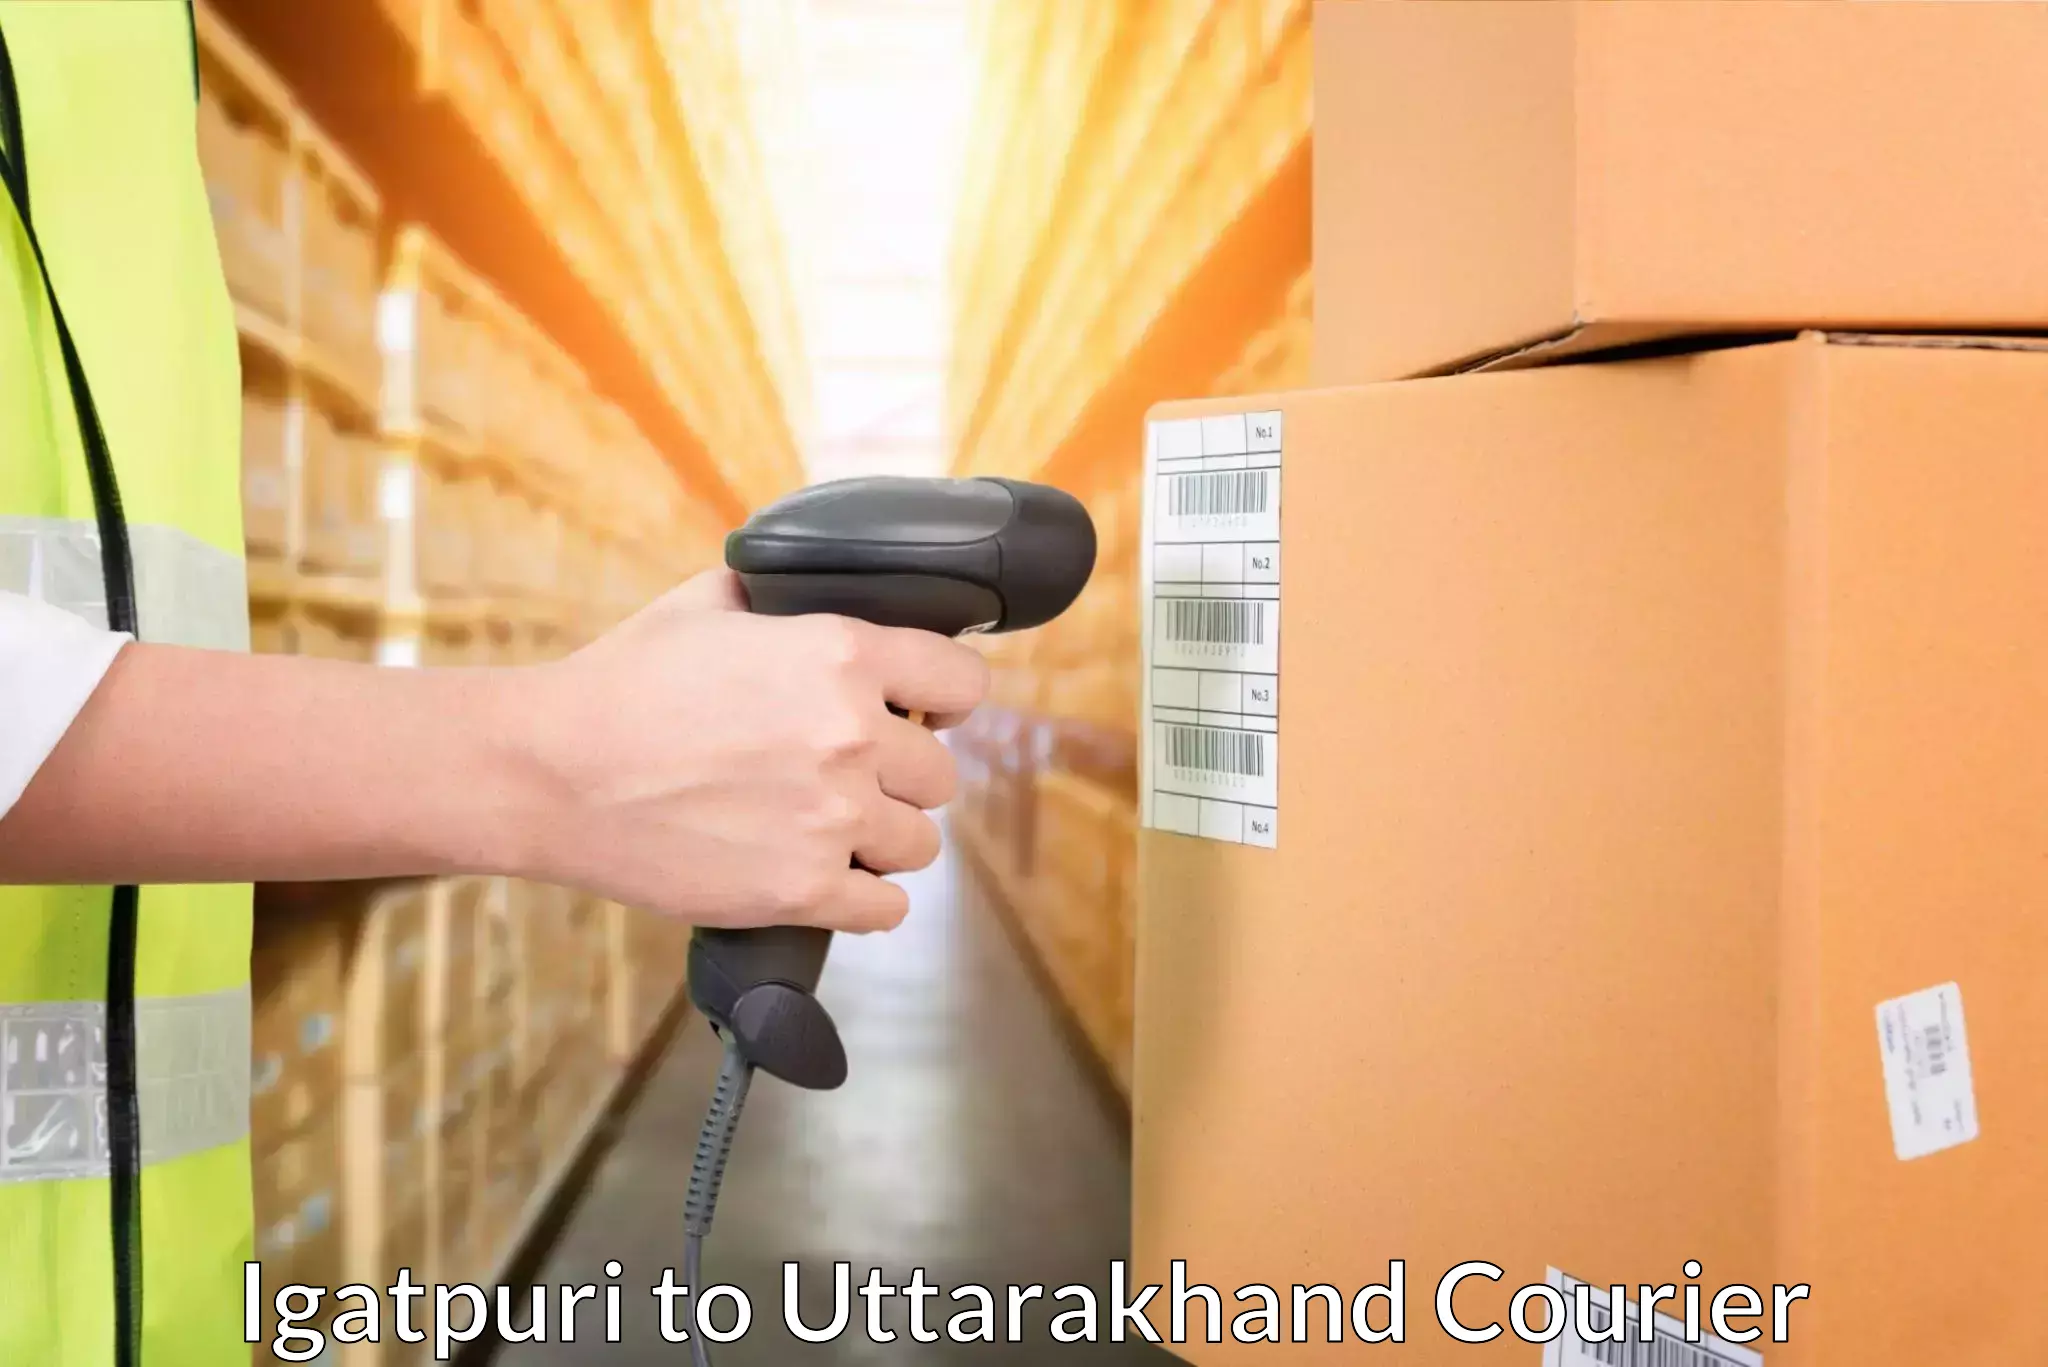 Express delivery capabilities Igatpuri to Uttarakhand